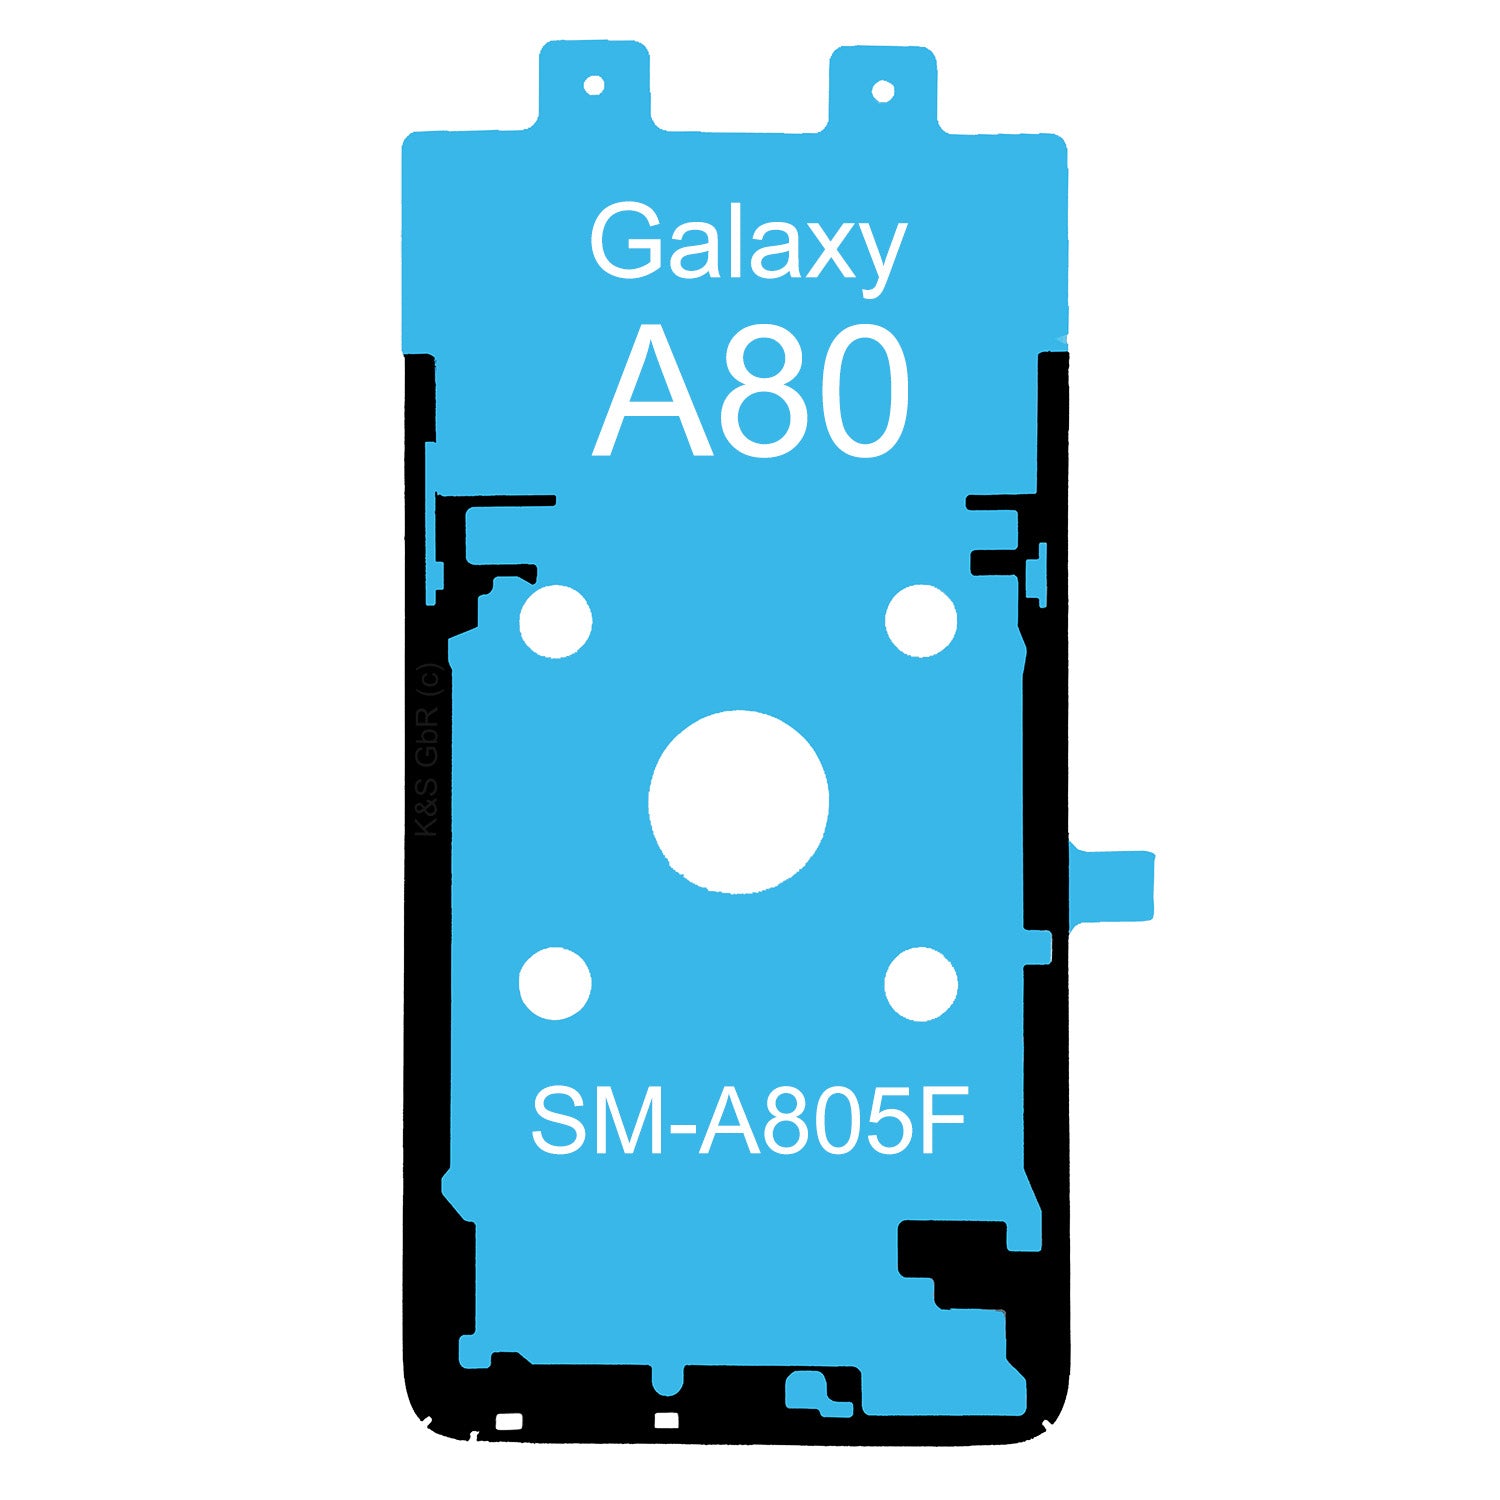 Kleberahmen für das Samsung Galaxy A80, SM-A805F. Klebepad, Adhesive Wasser Dichtung, im Dinngs Onlineshop entdecken und bestellen!